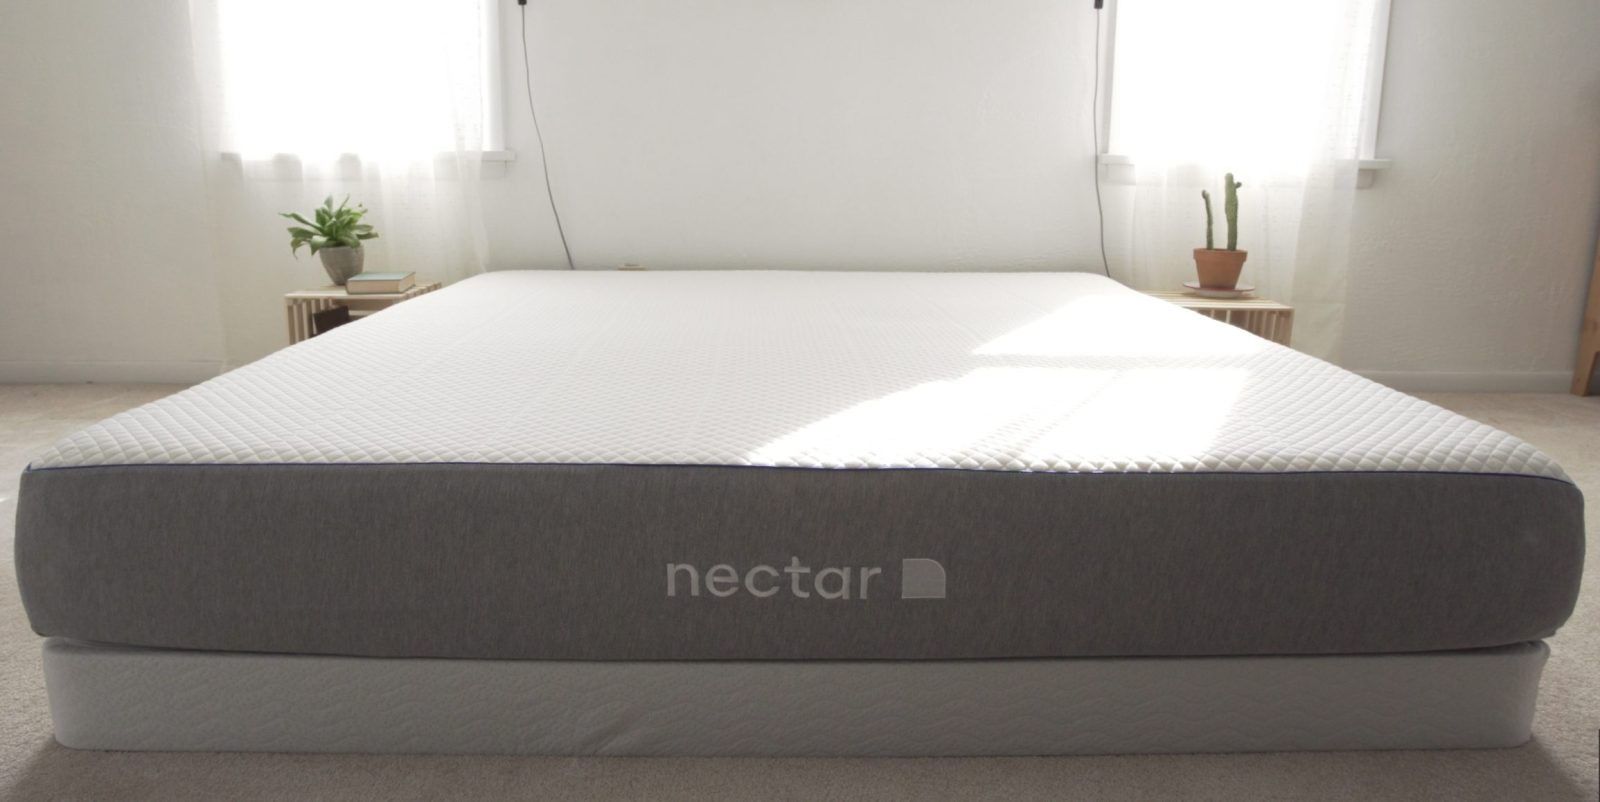 NEW - NECTAR Queen Memory Foam Mattress + 2 FREE Pillows!